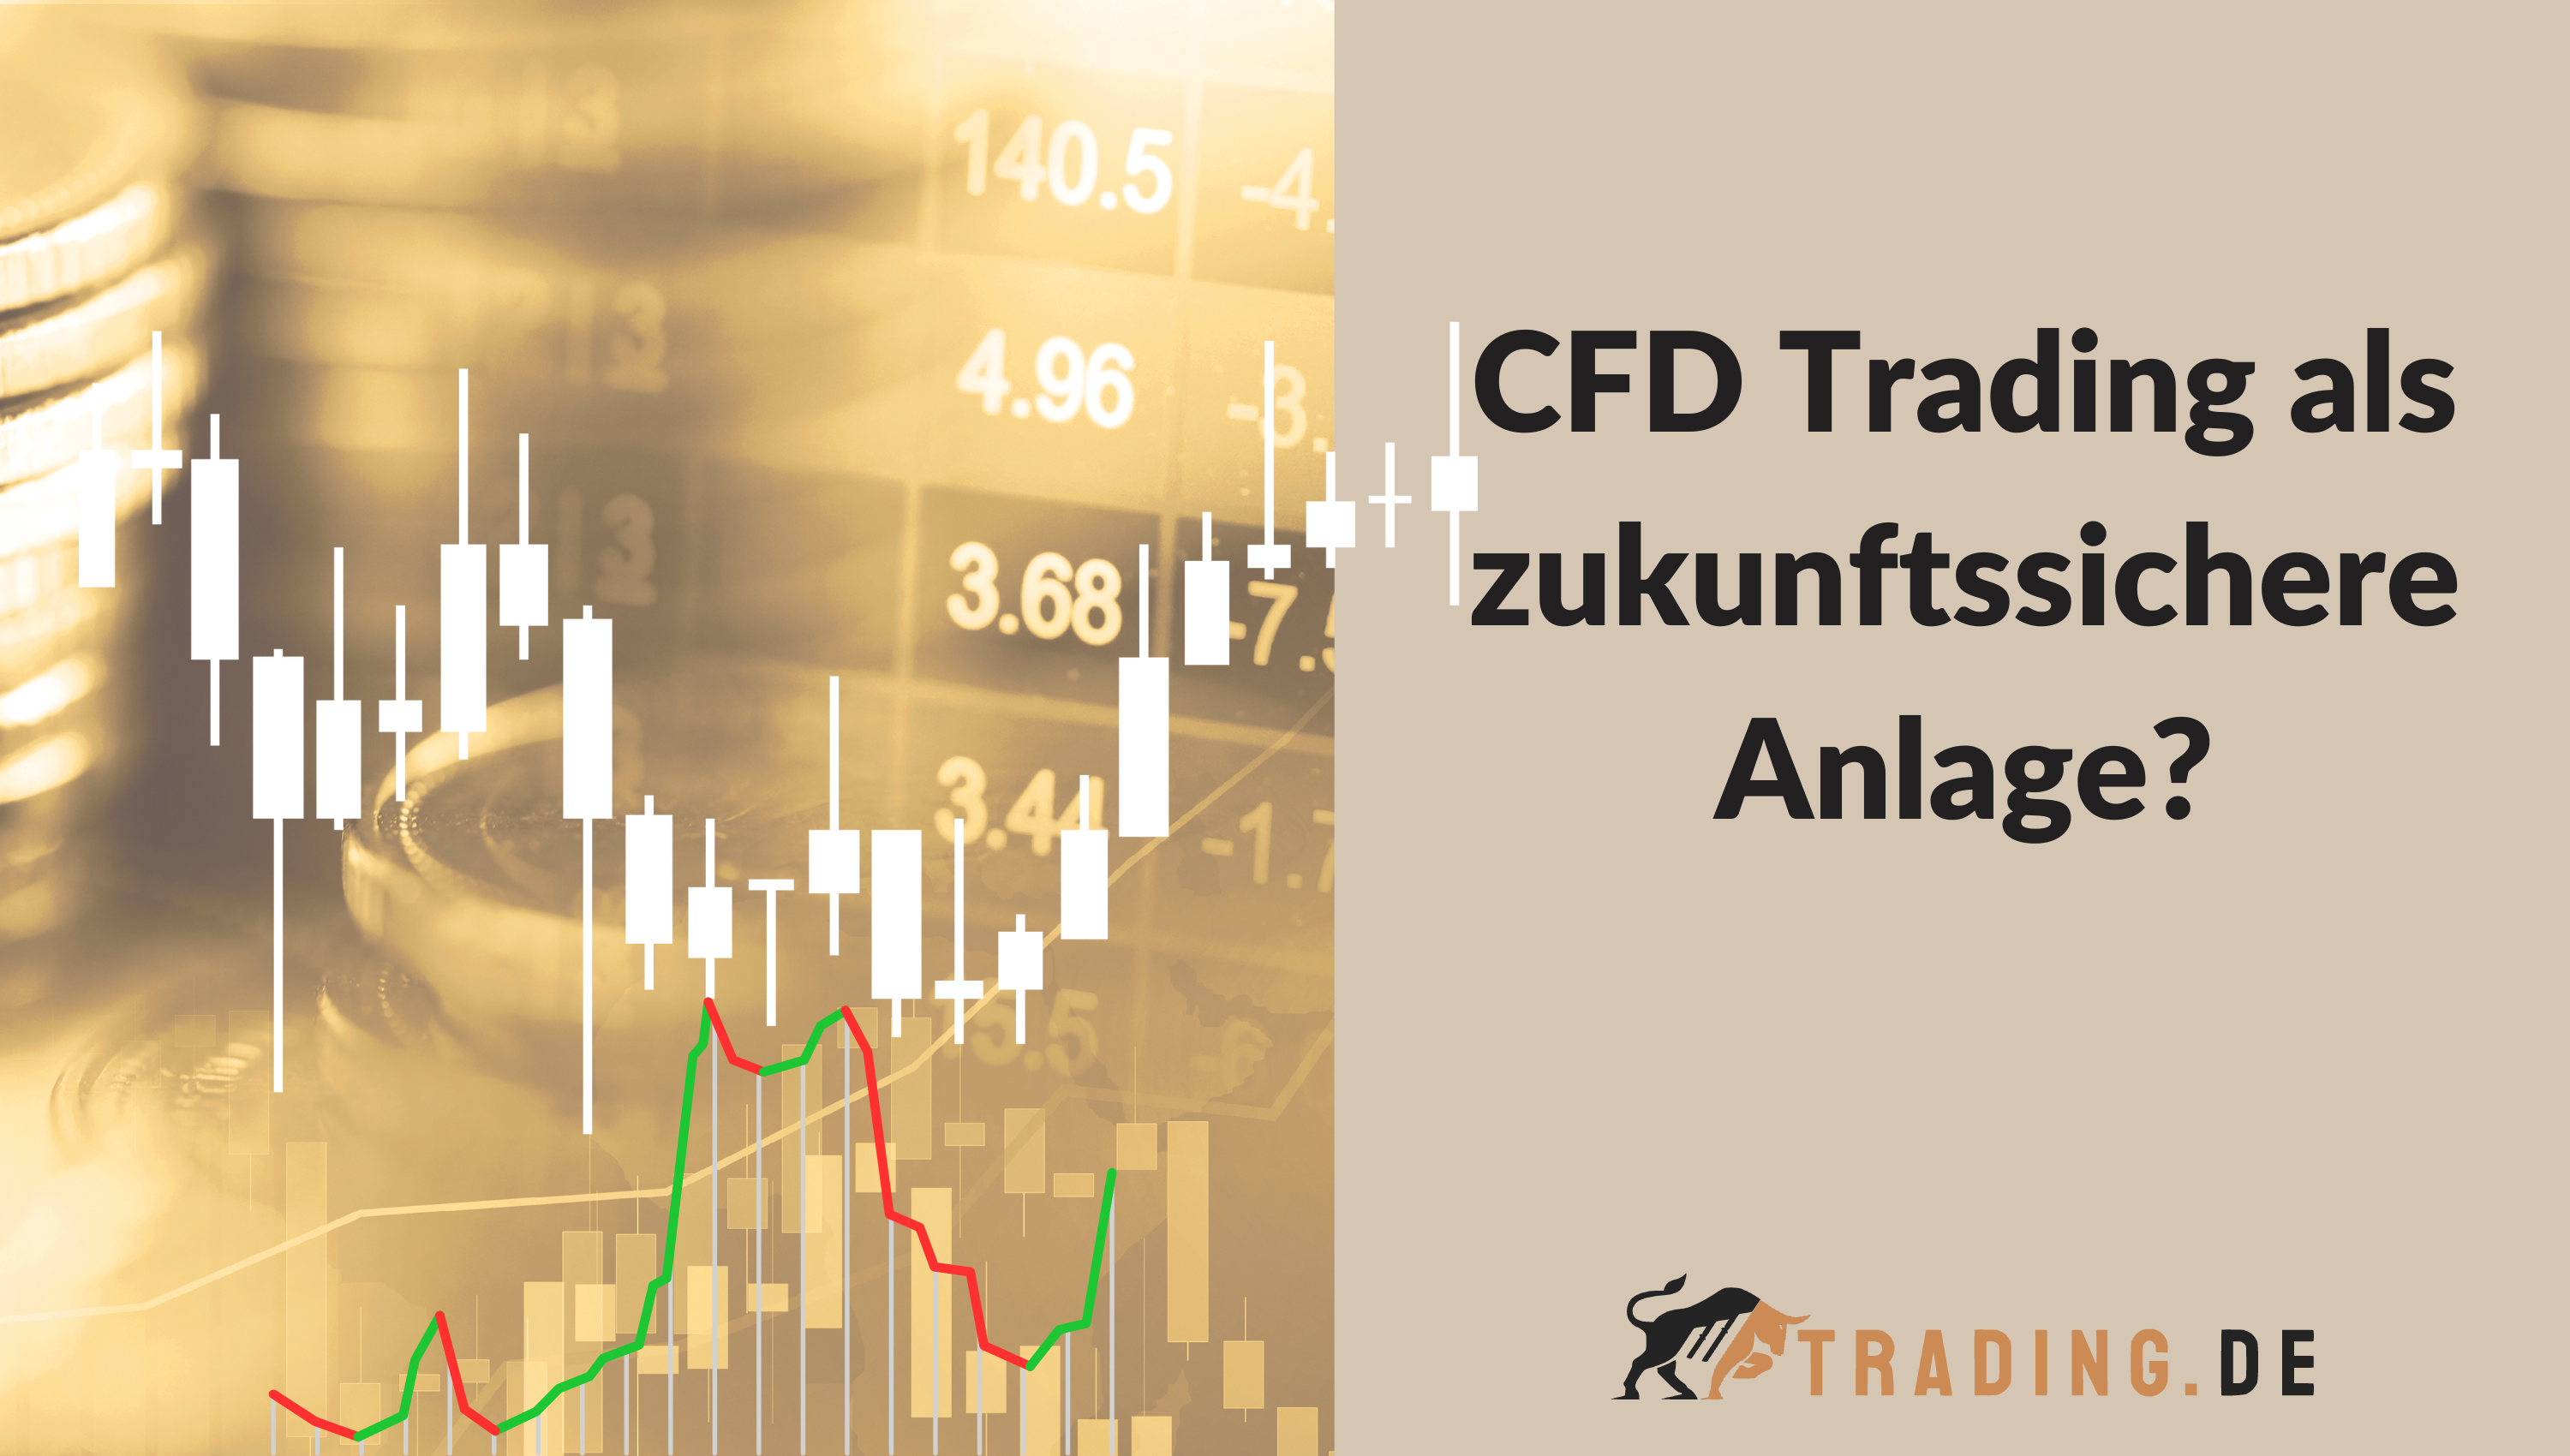 CFD Trading als zukunftssichere Anlage?